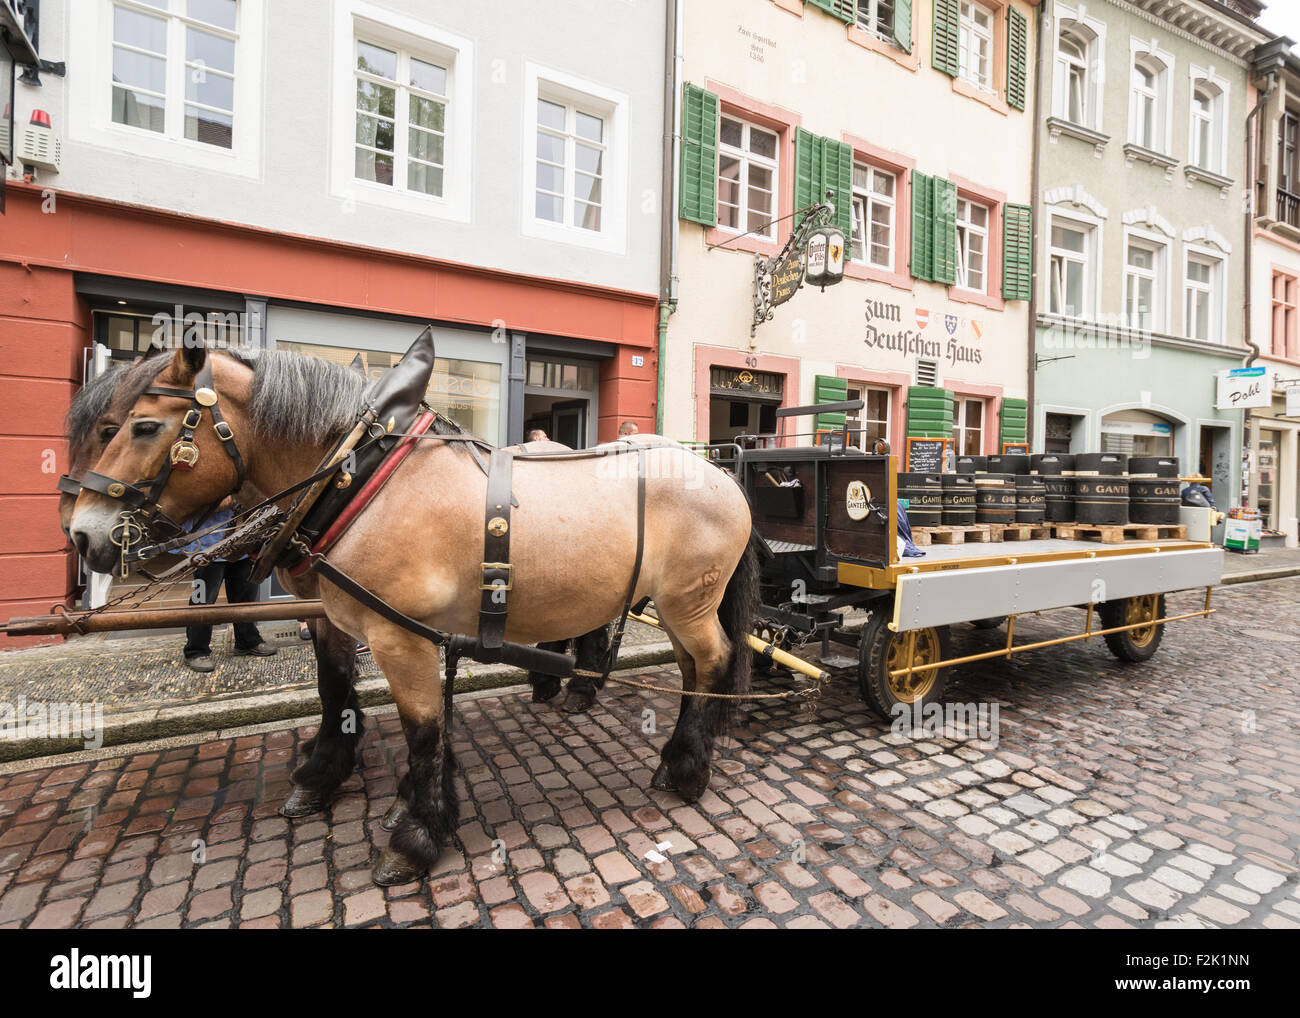 Barils de Ganter Pils Pilsner livré par cheval sur les rues pavées de Freiburg, Allemagne Banque D'Images